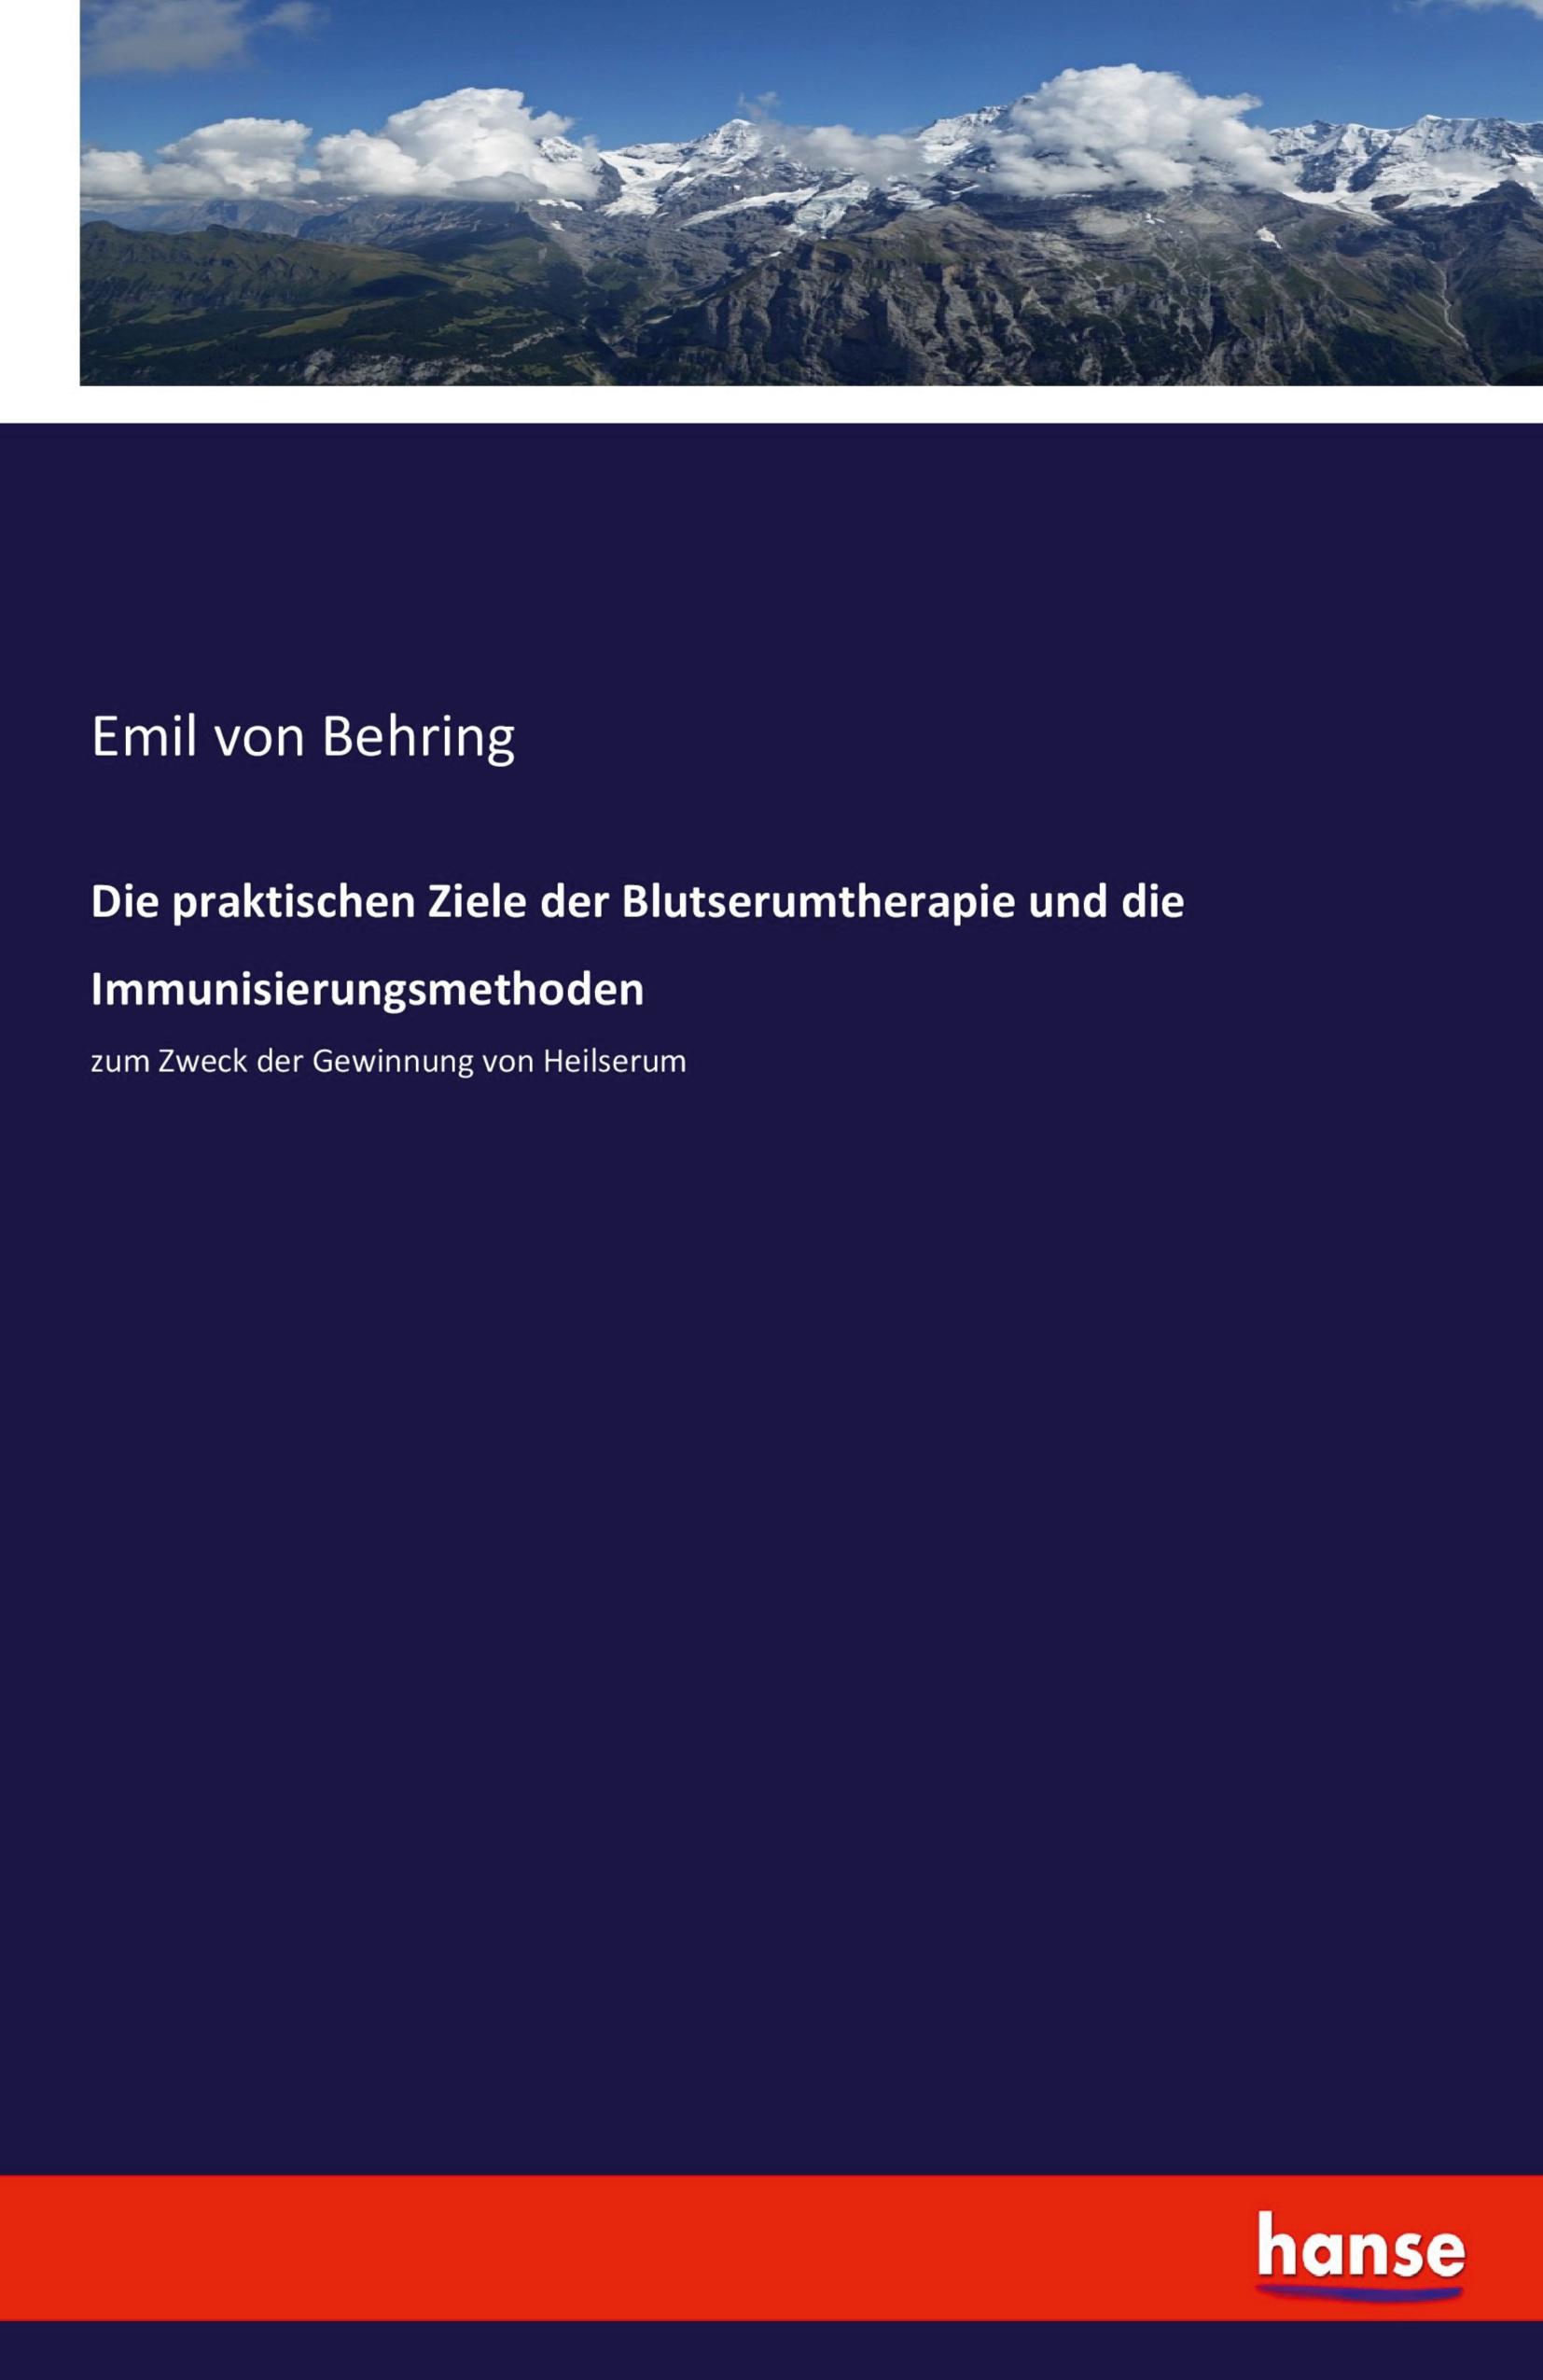 Die praktischen Ziele der Blutserumtherapie und die Immunisierungsmethoden - Behring, Emil von